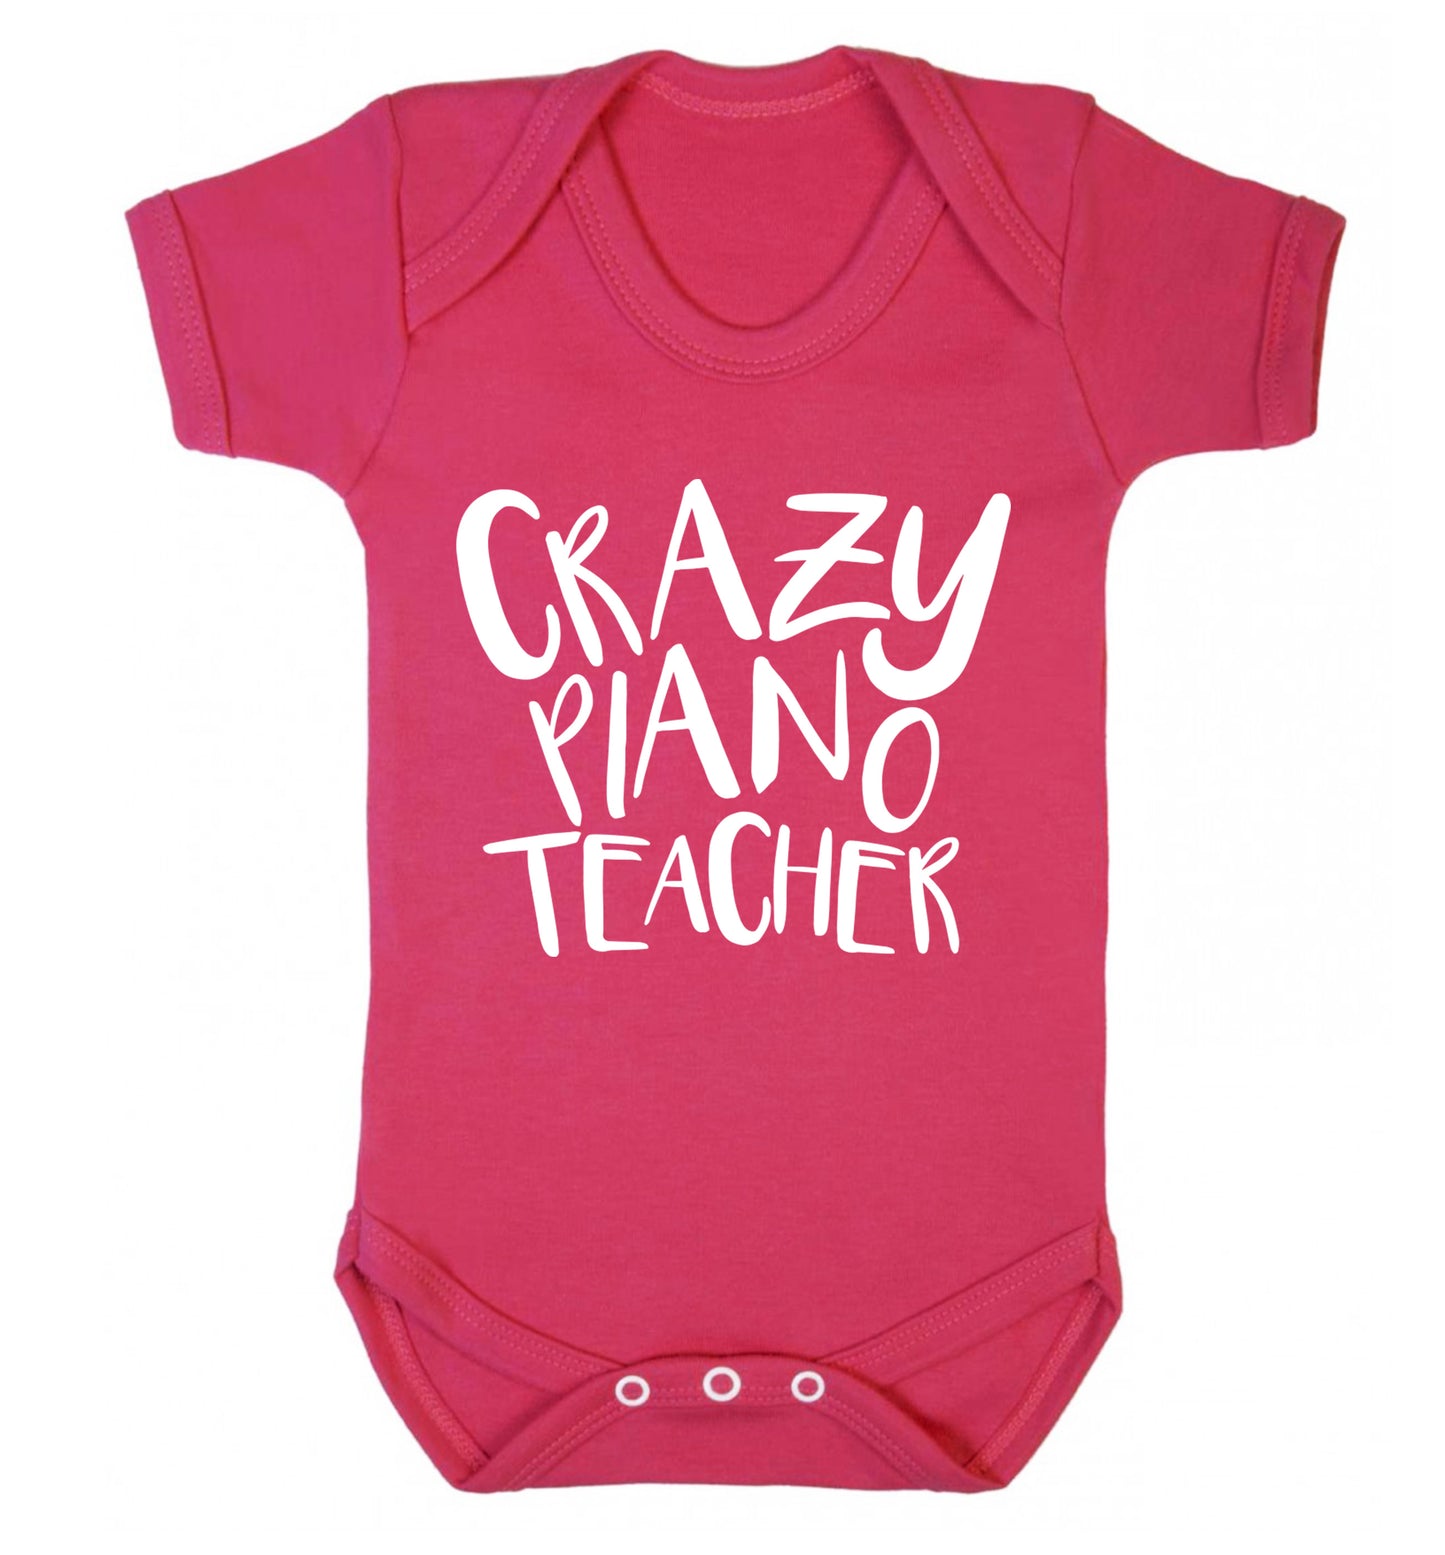 Crazy piano teacher Baby Vest dark pink 18-24 months